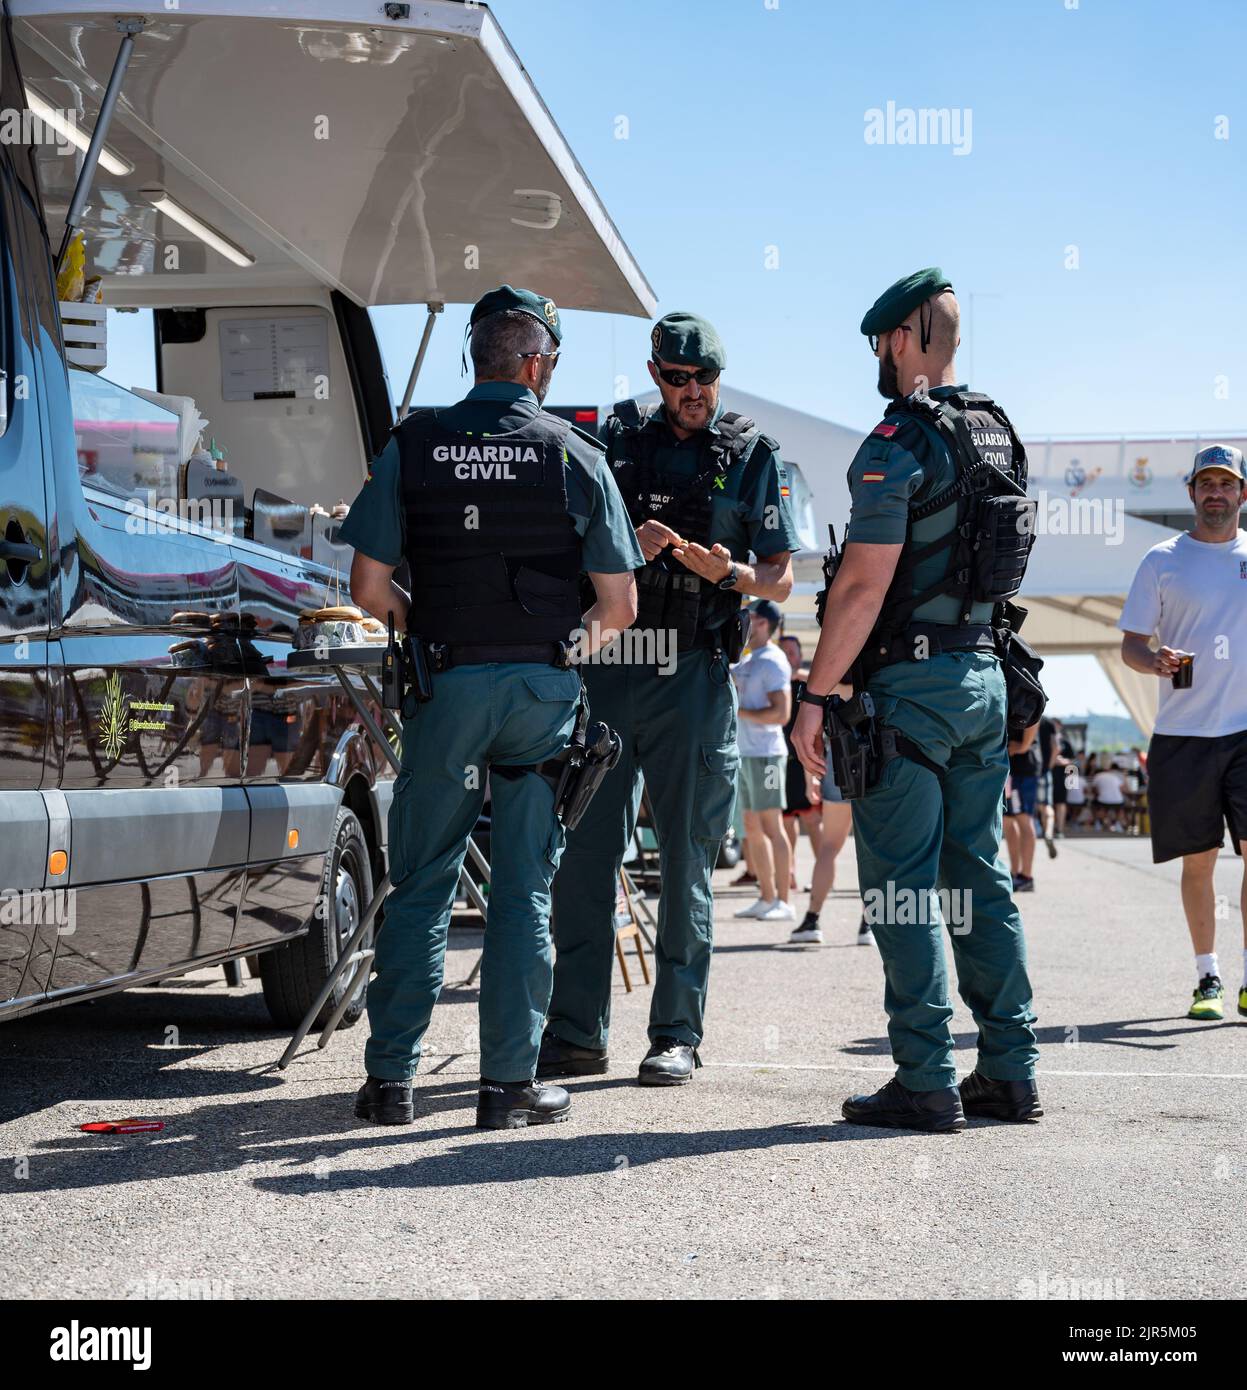 La Garde civile espagnole mangeant à partir d'un camion alimentaire par une journée ensoleillée Banque D'Images